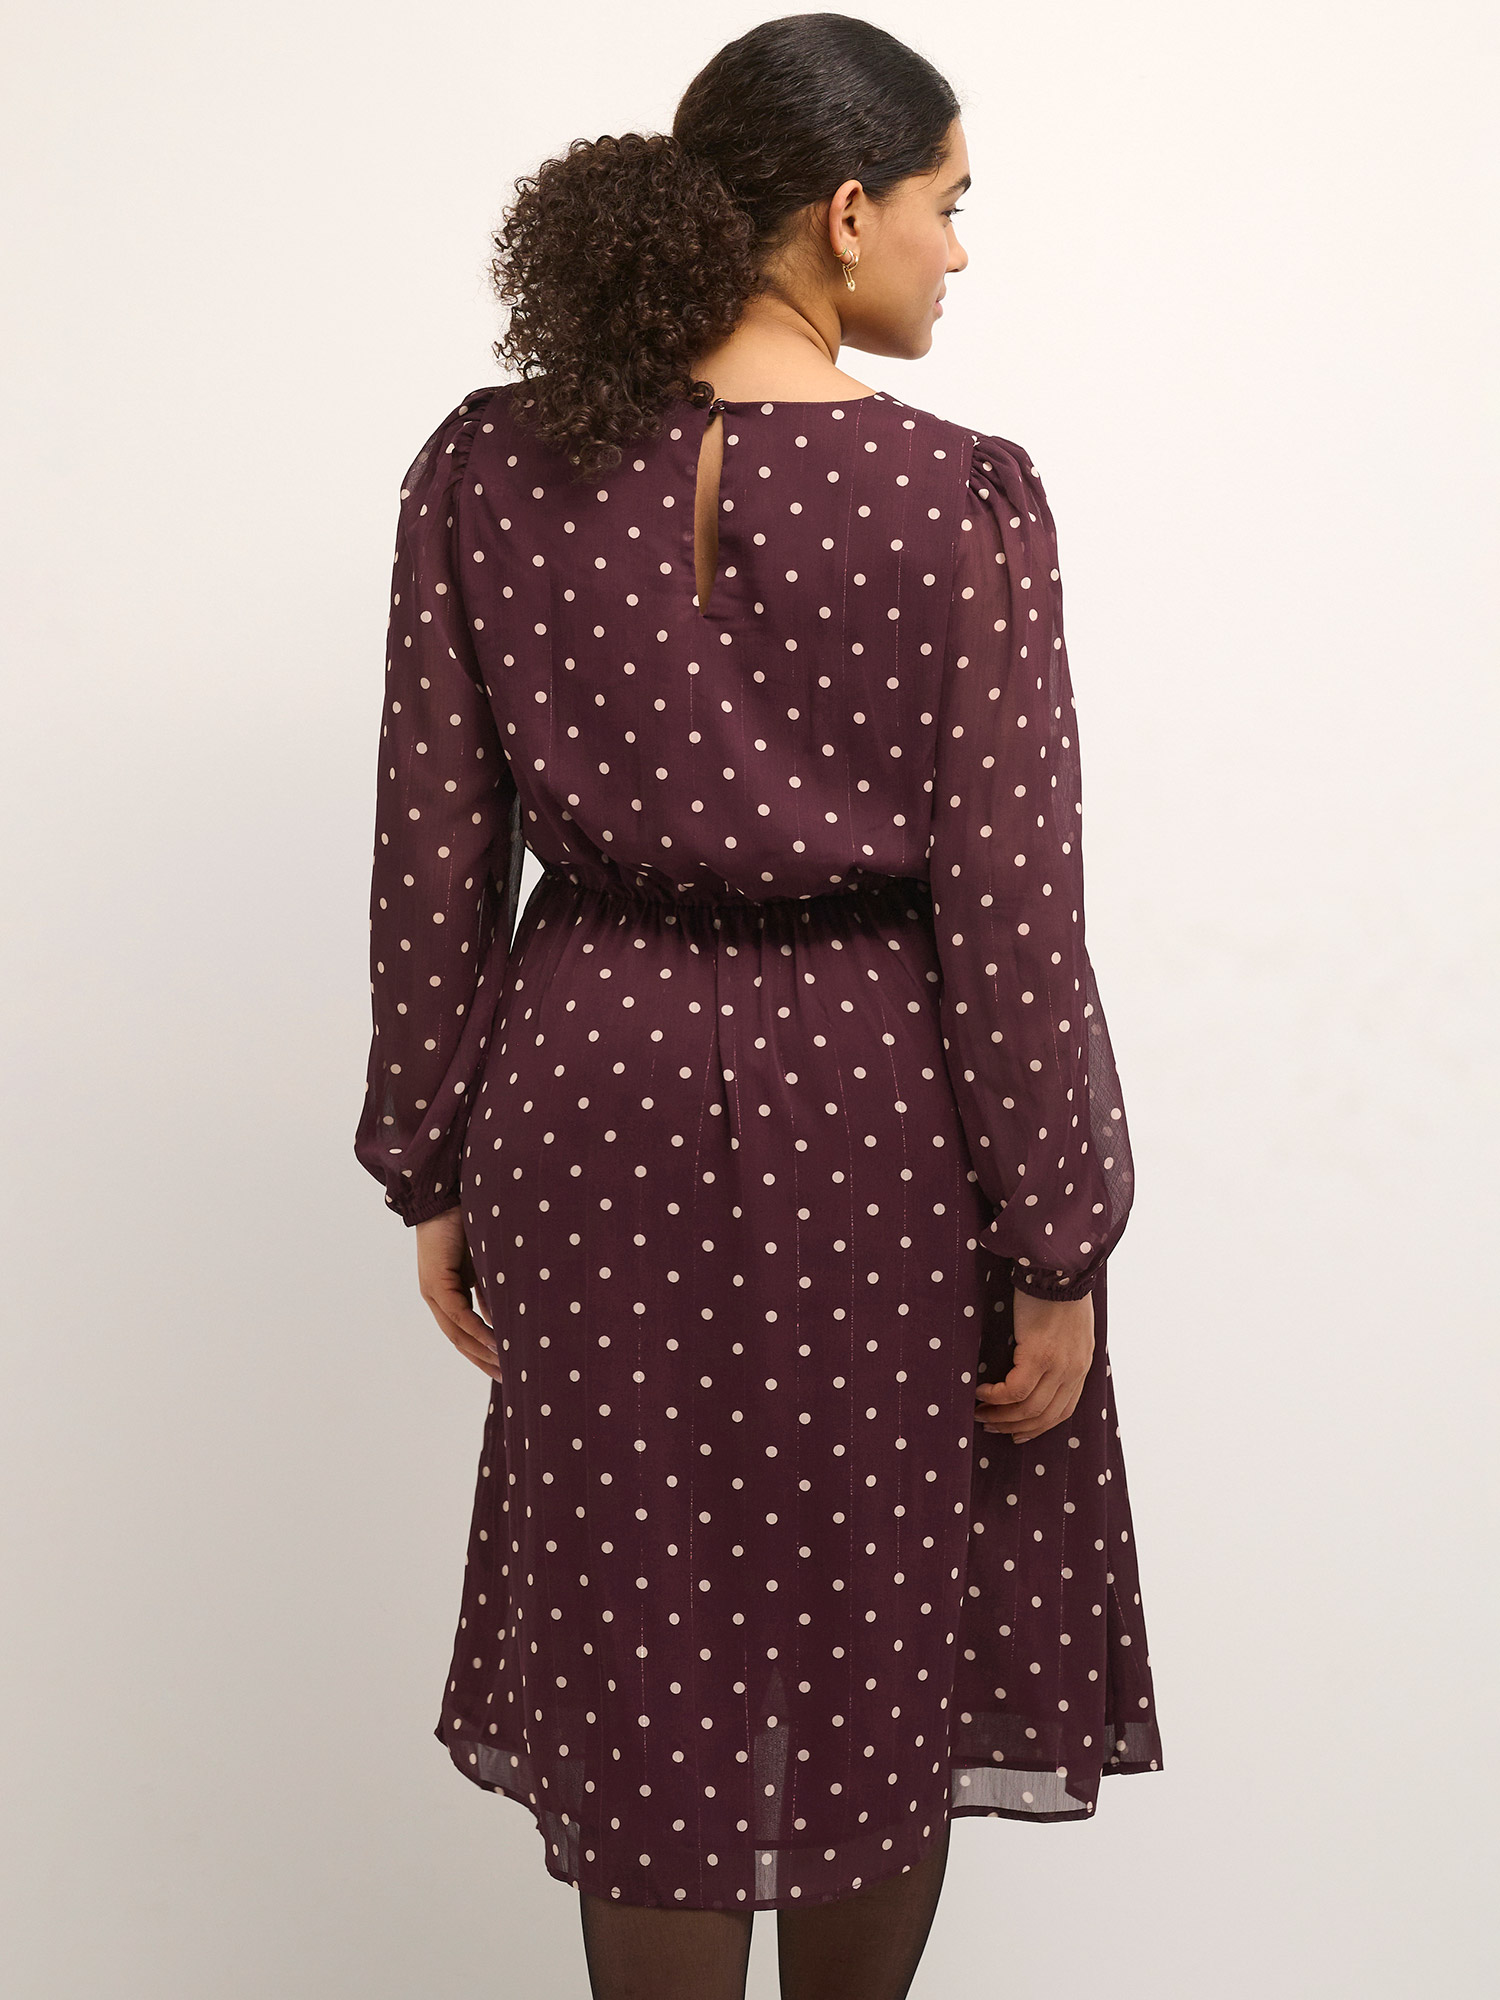 SMILA - Mørkelilla kjole med prikker fra Kaffe Curve